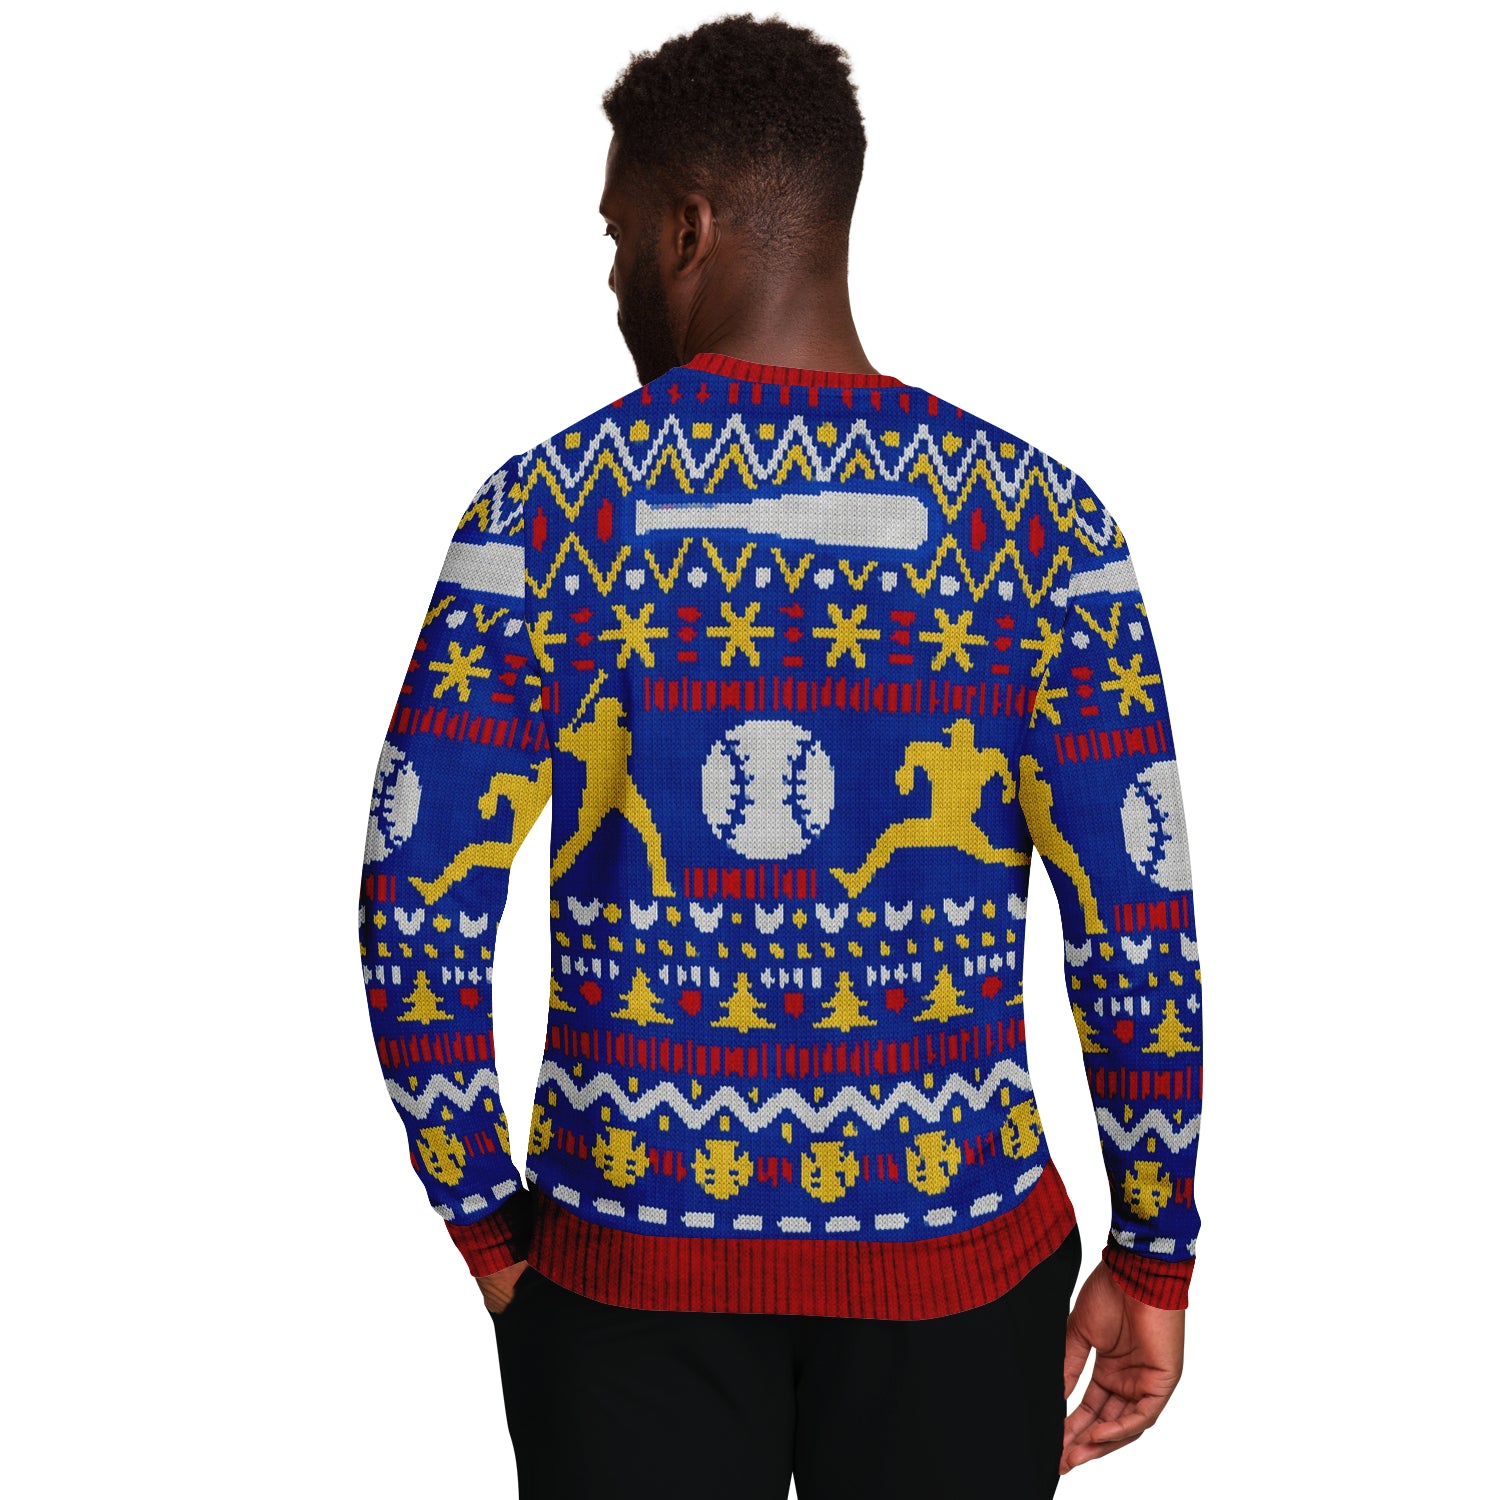 Home For Christmas Baseball Sweatshirt | Unisex Ugly Christmas Sweater, Xmas Sweater, Holiday Sweater, Festive Sweater, Funny Sweater, Funny Party Shirt